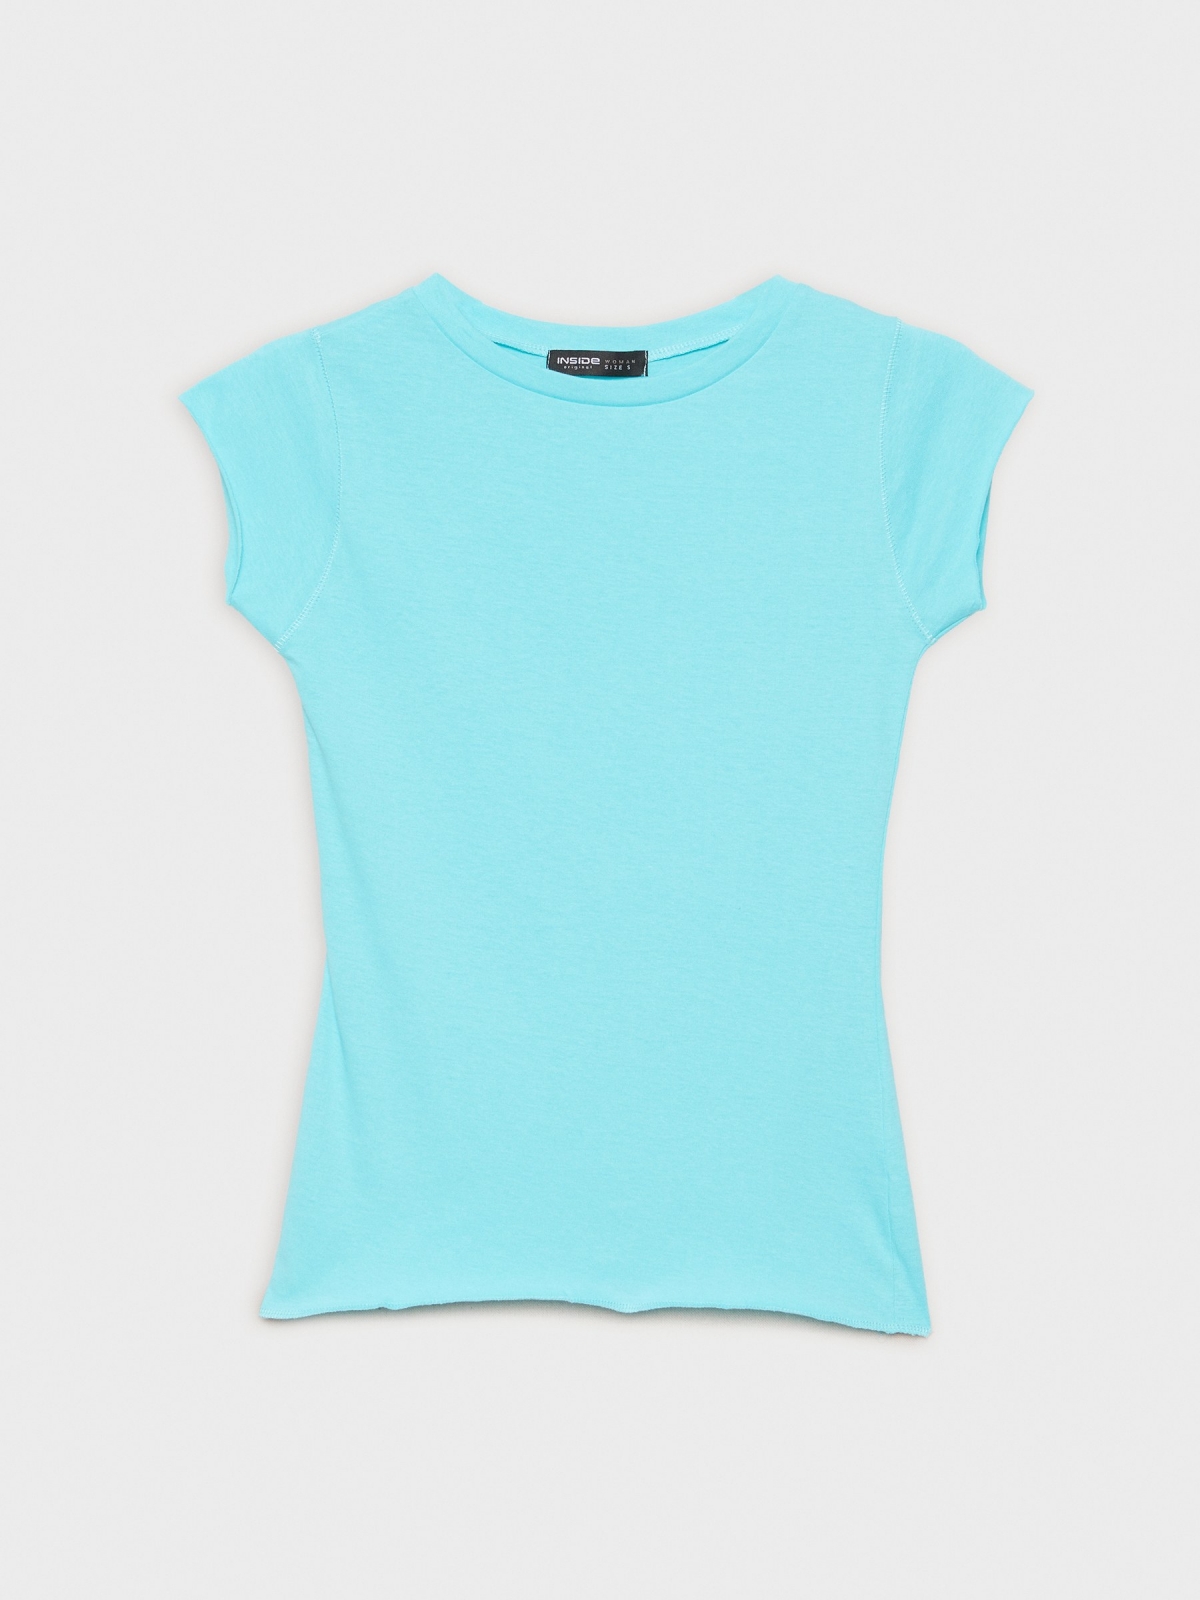  T-shirt básica de gola redonda azul claro